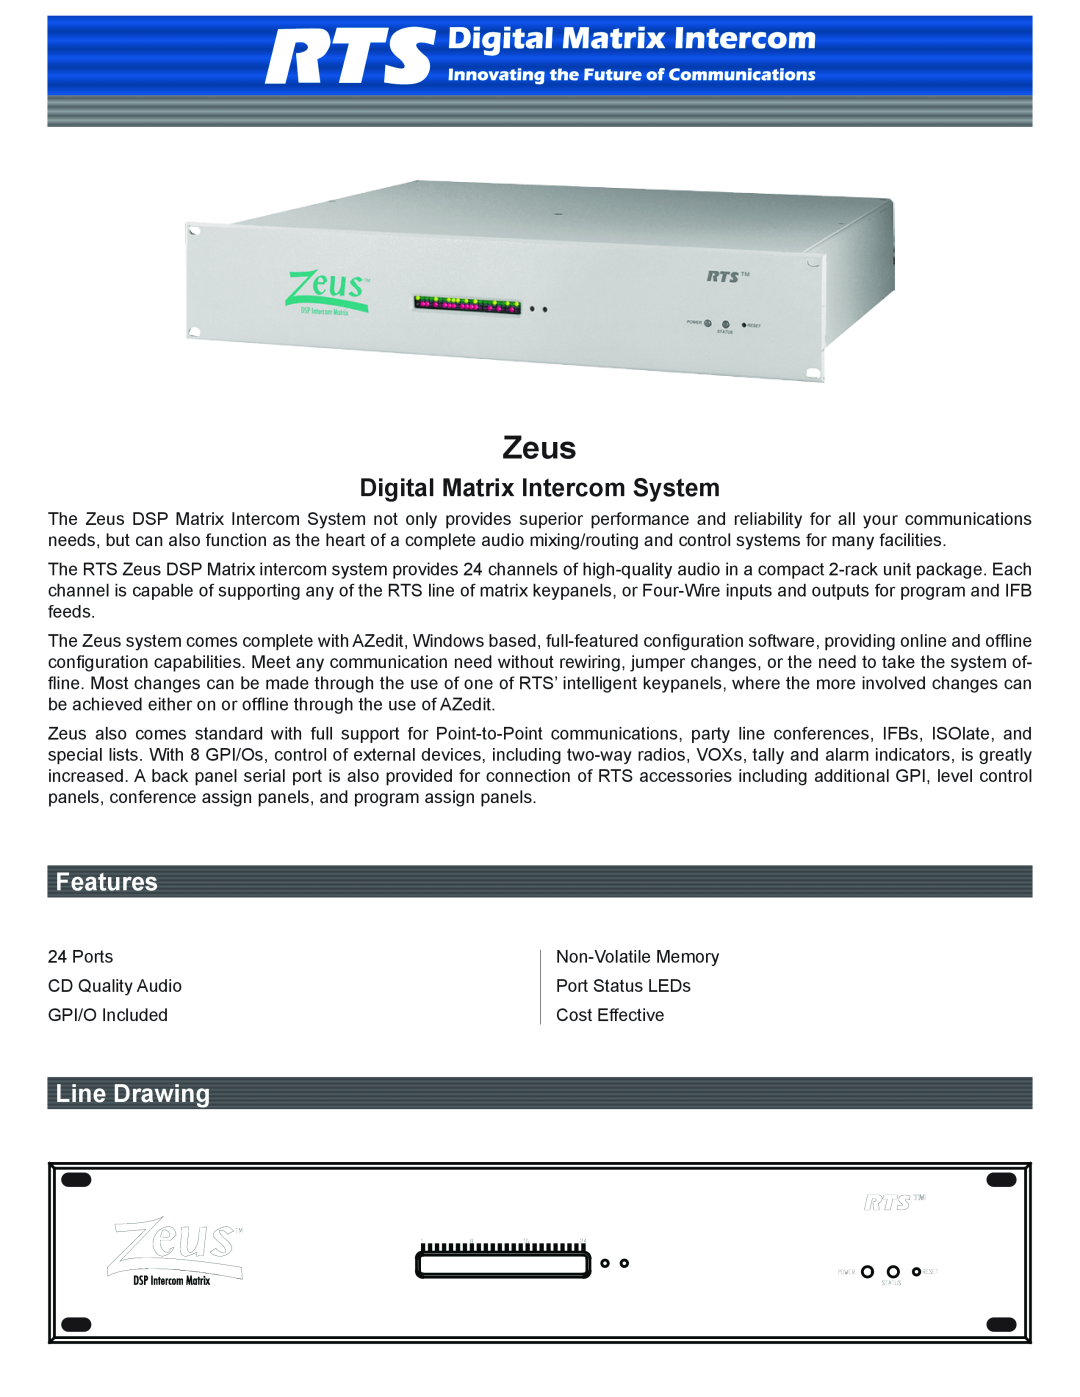 RTS Digital Matrix Intercom System manual Zeus, Features, Line Drawing 